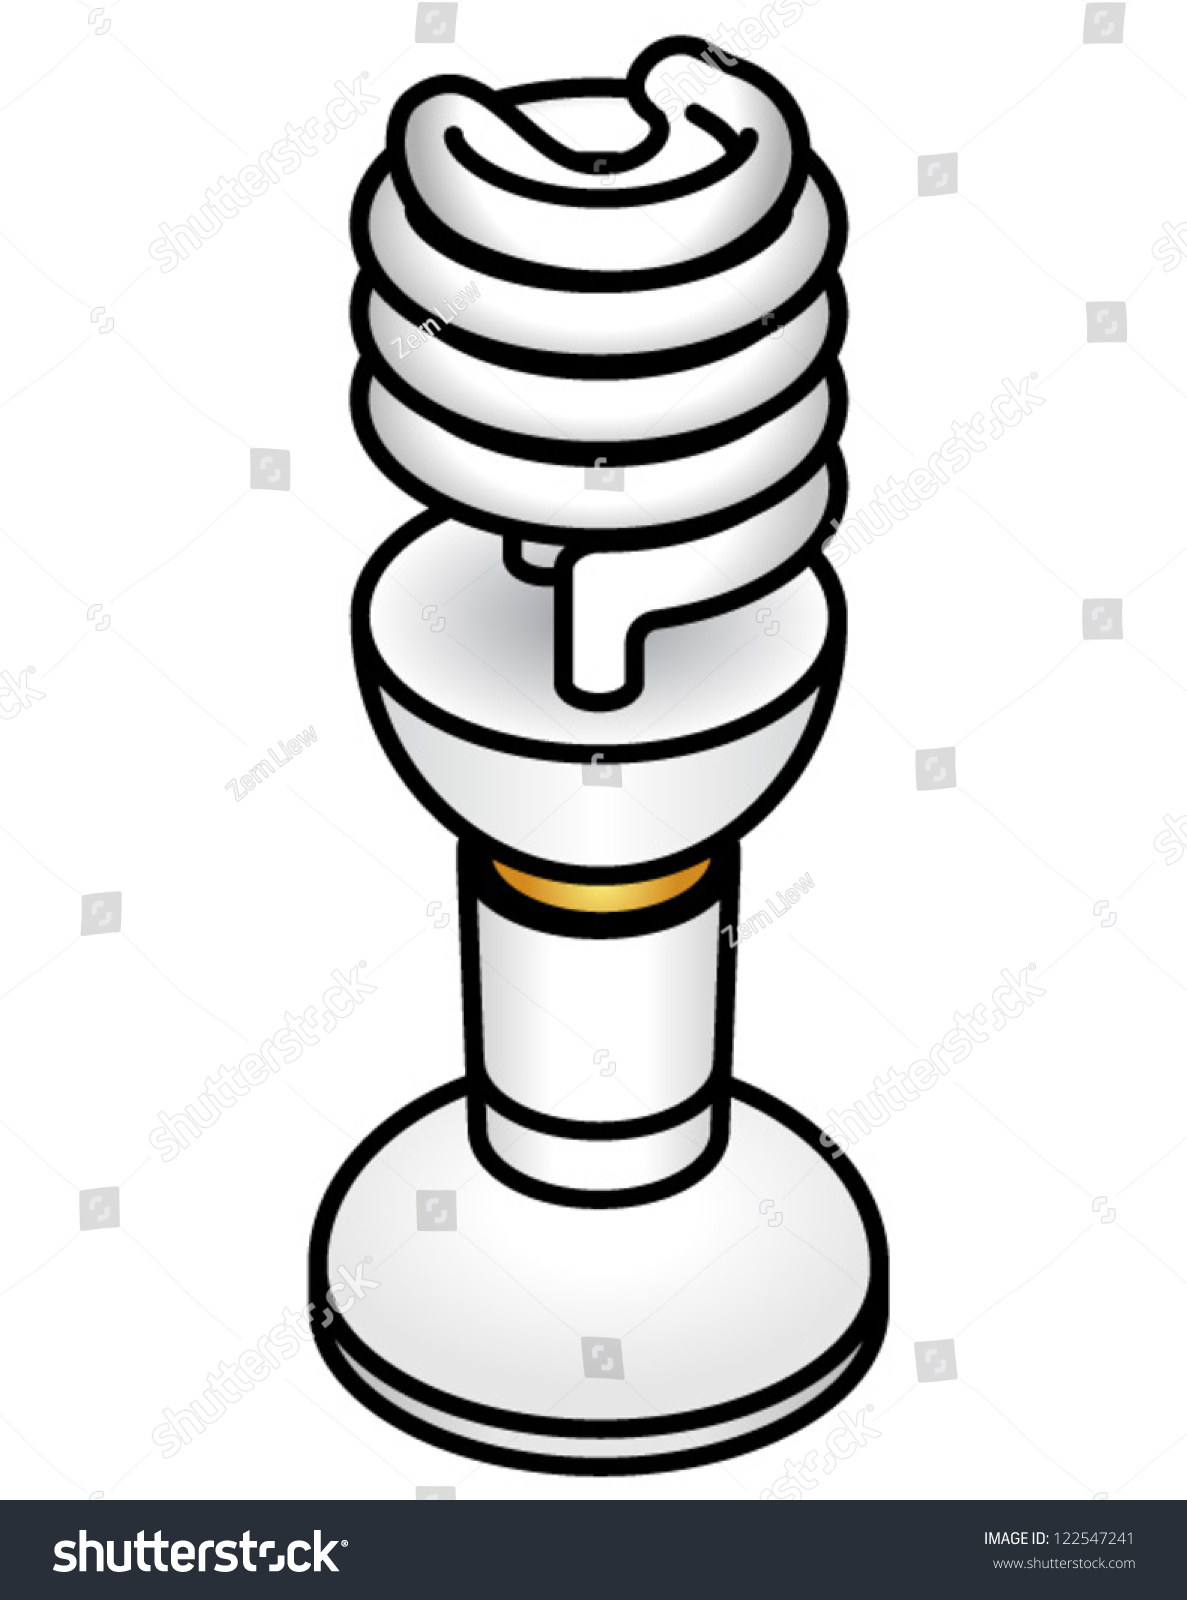 spiral bulb holder